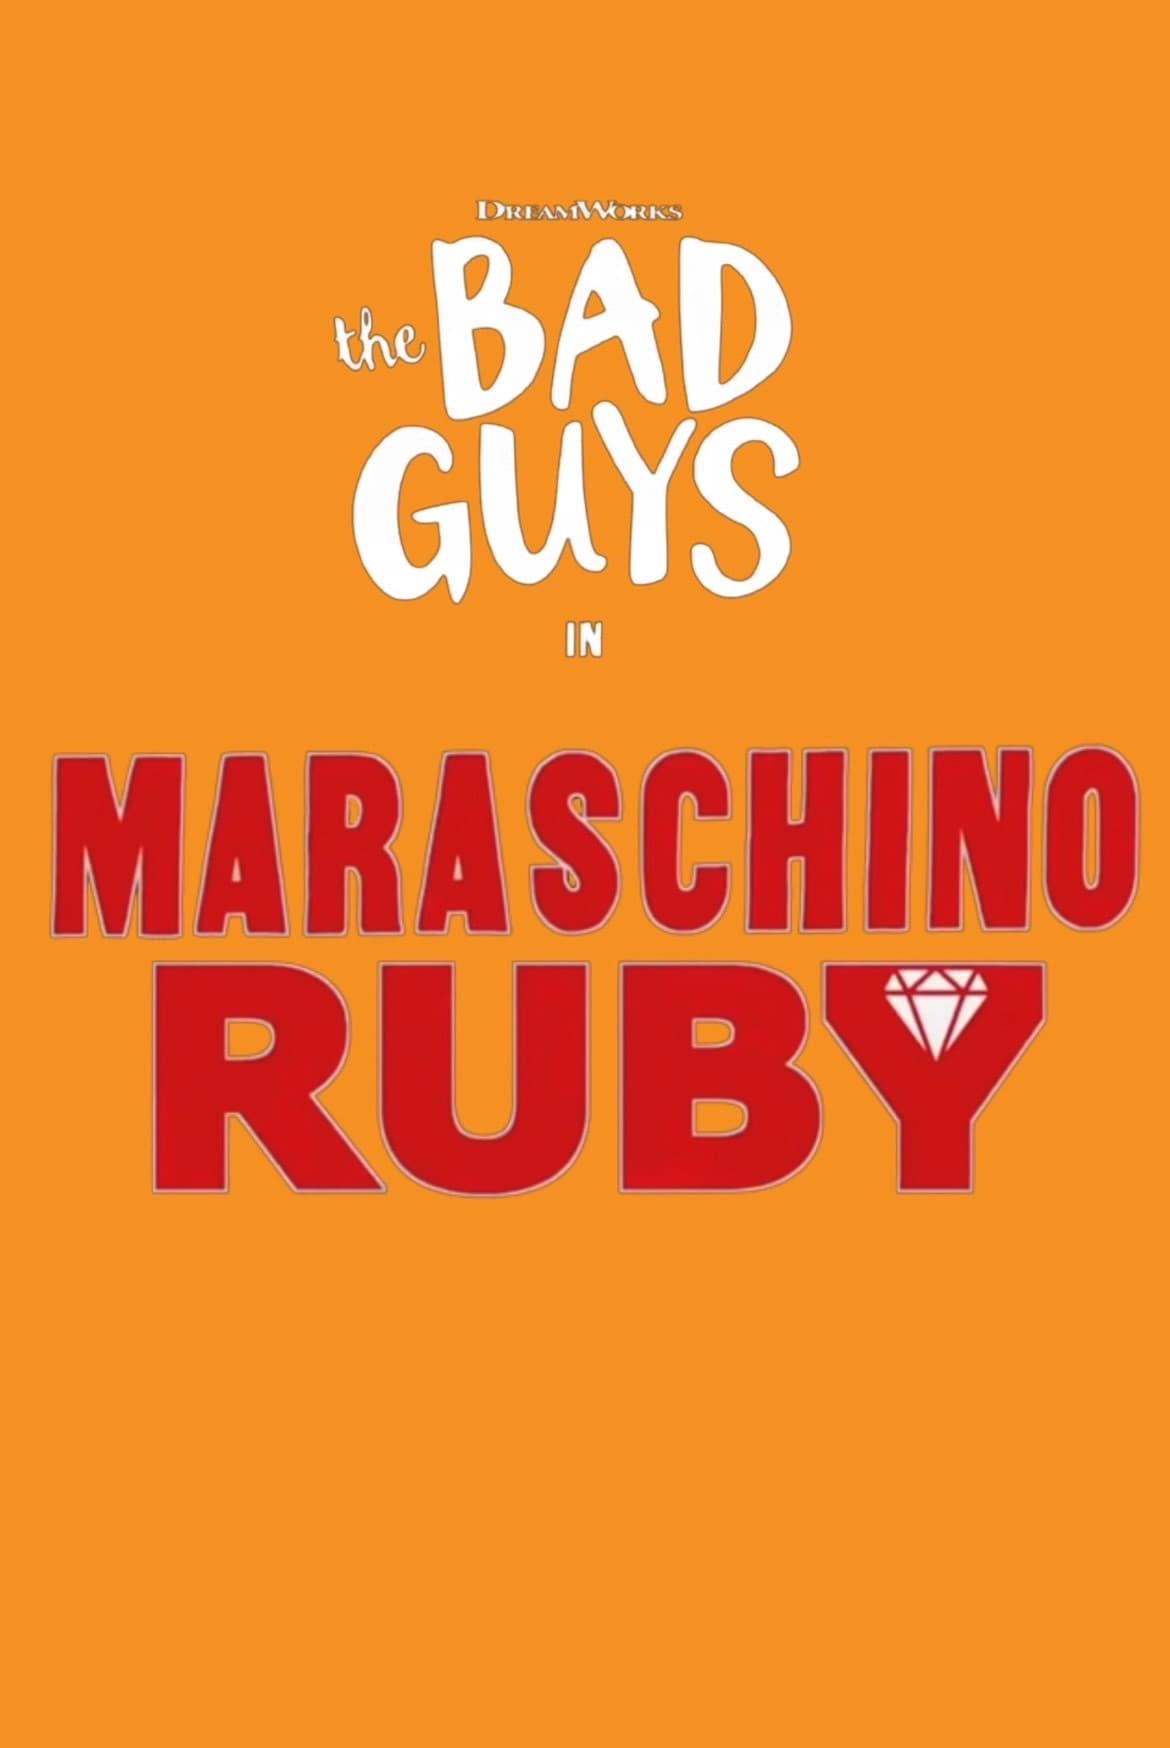 Maraschino Ruby poster